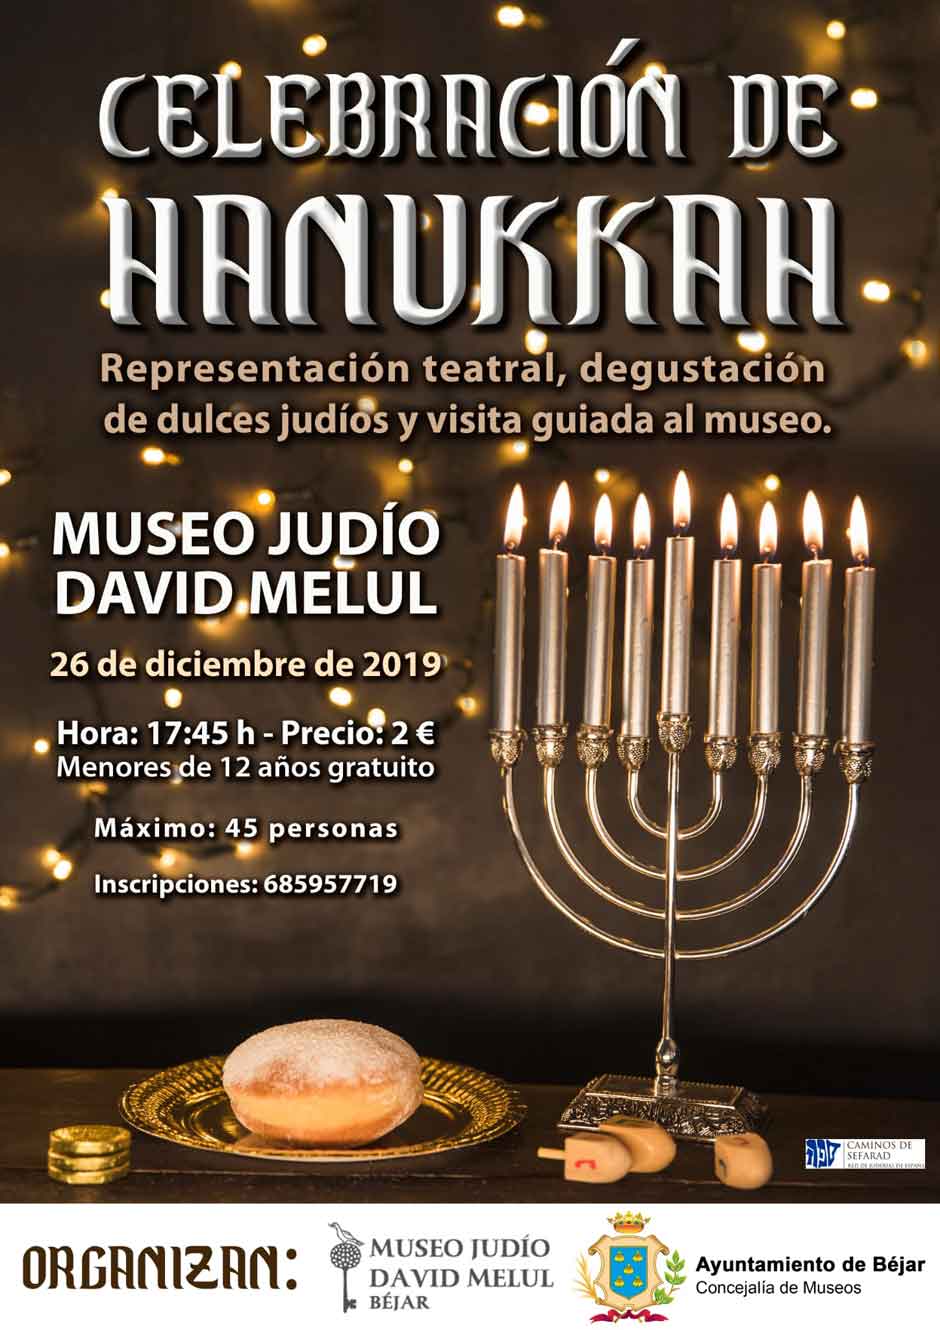 Hanukkah en el Museo Judío David Melul de Béjar